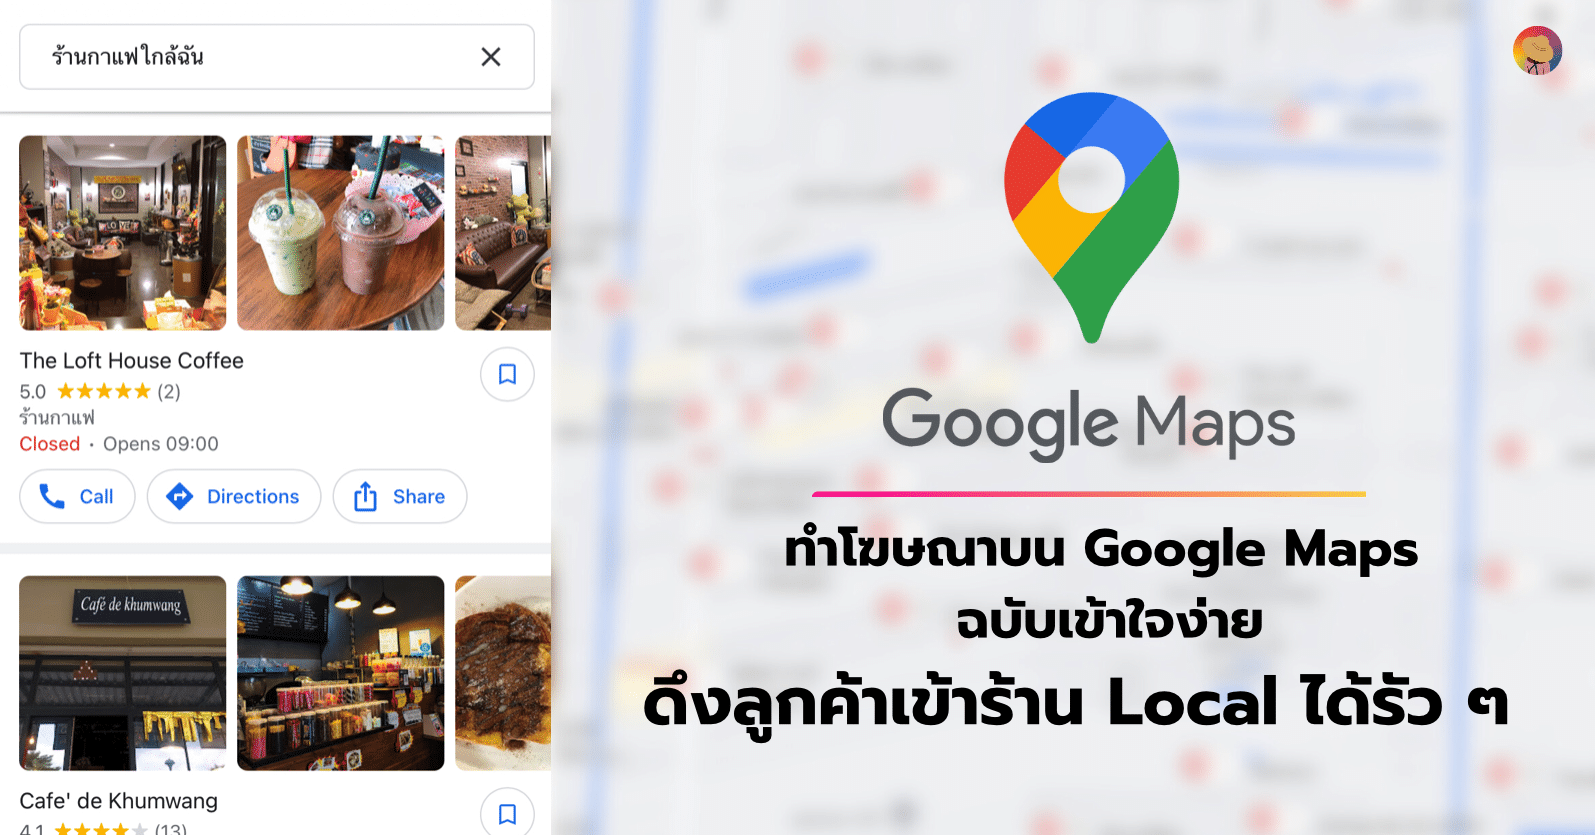 ทำโฆษณาบน Google Maps แบบเข้าใจง่าย ดึงลูกค้าเข้าร้าน Local ได้รัว ๆ  